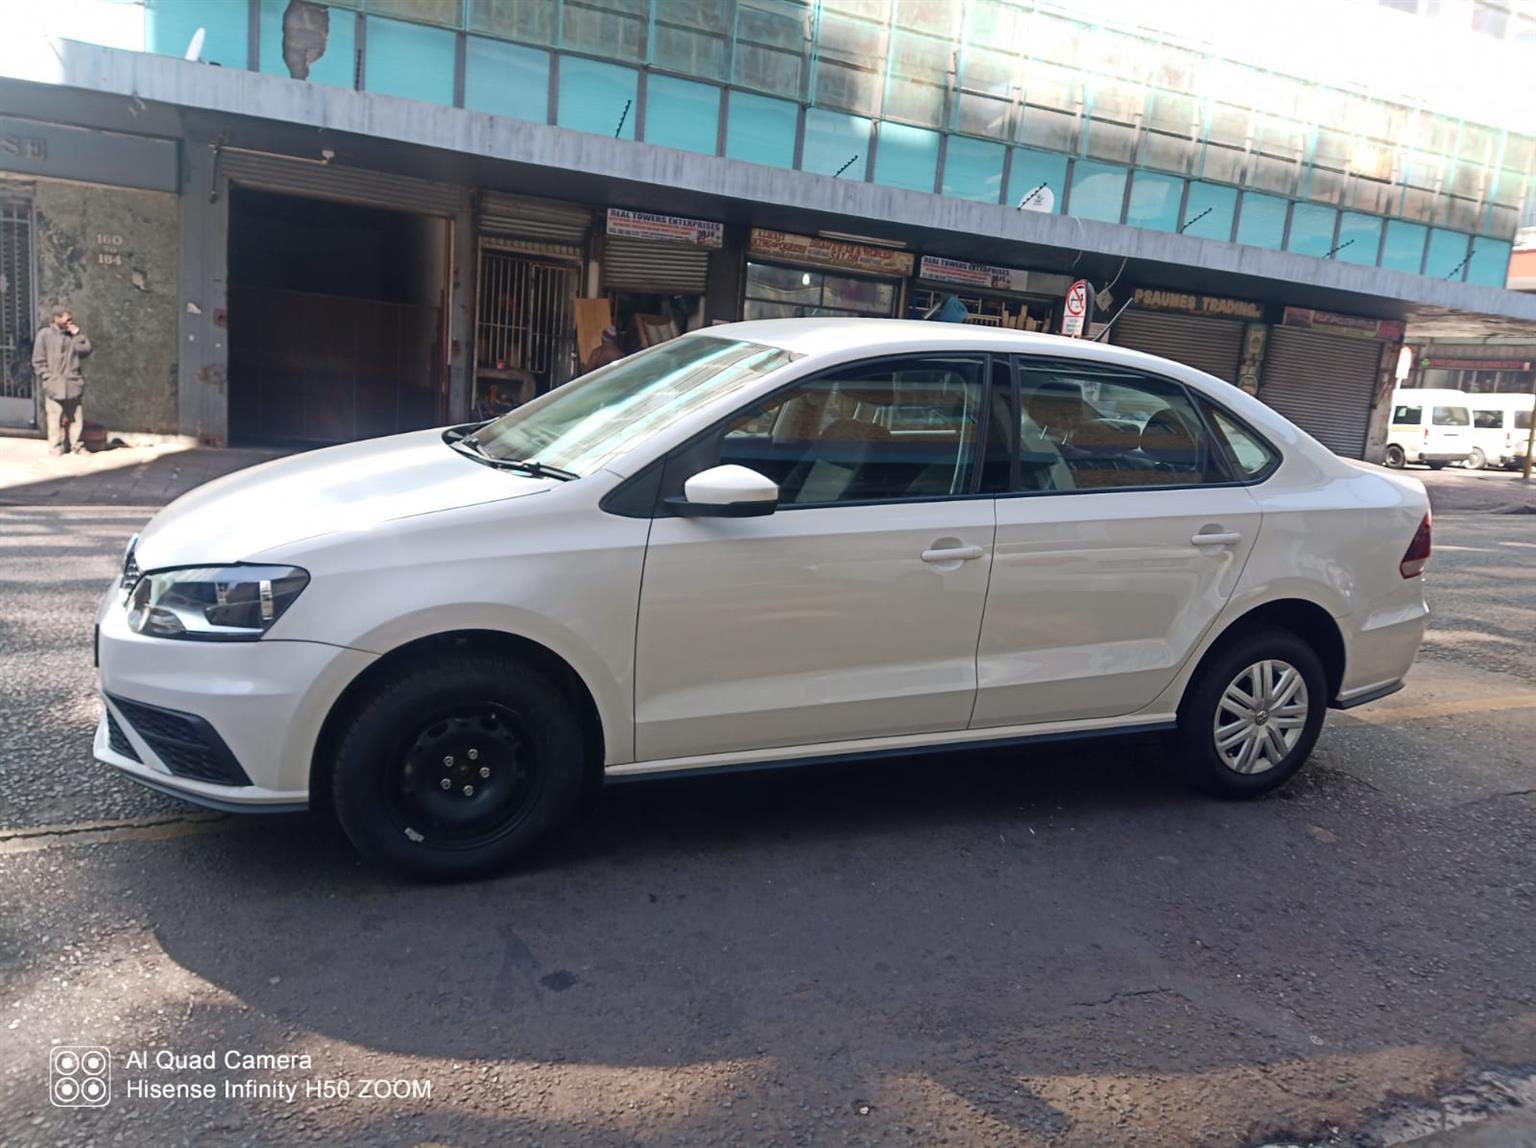 VW Polo vivi ,model 2013,Manual,White,72000km | Junk Mail